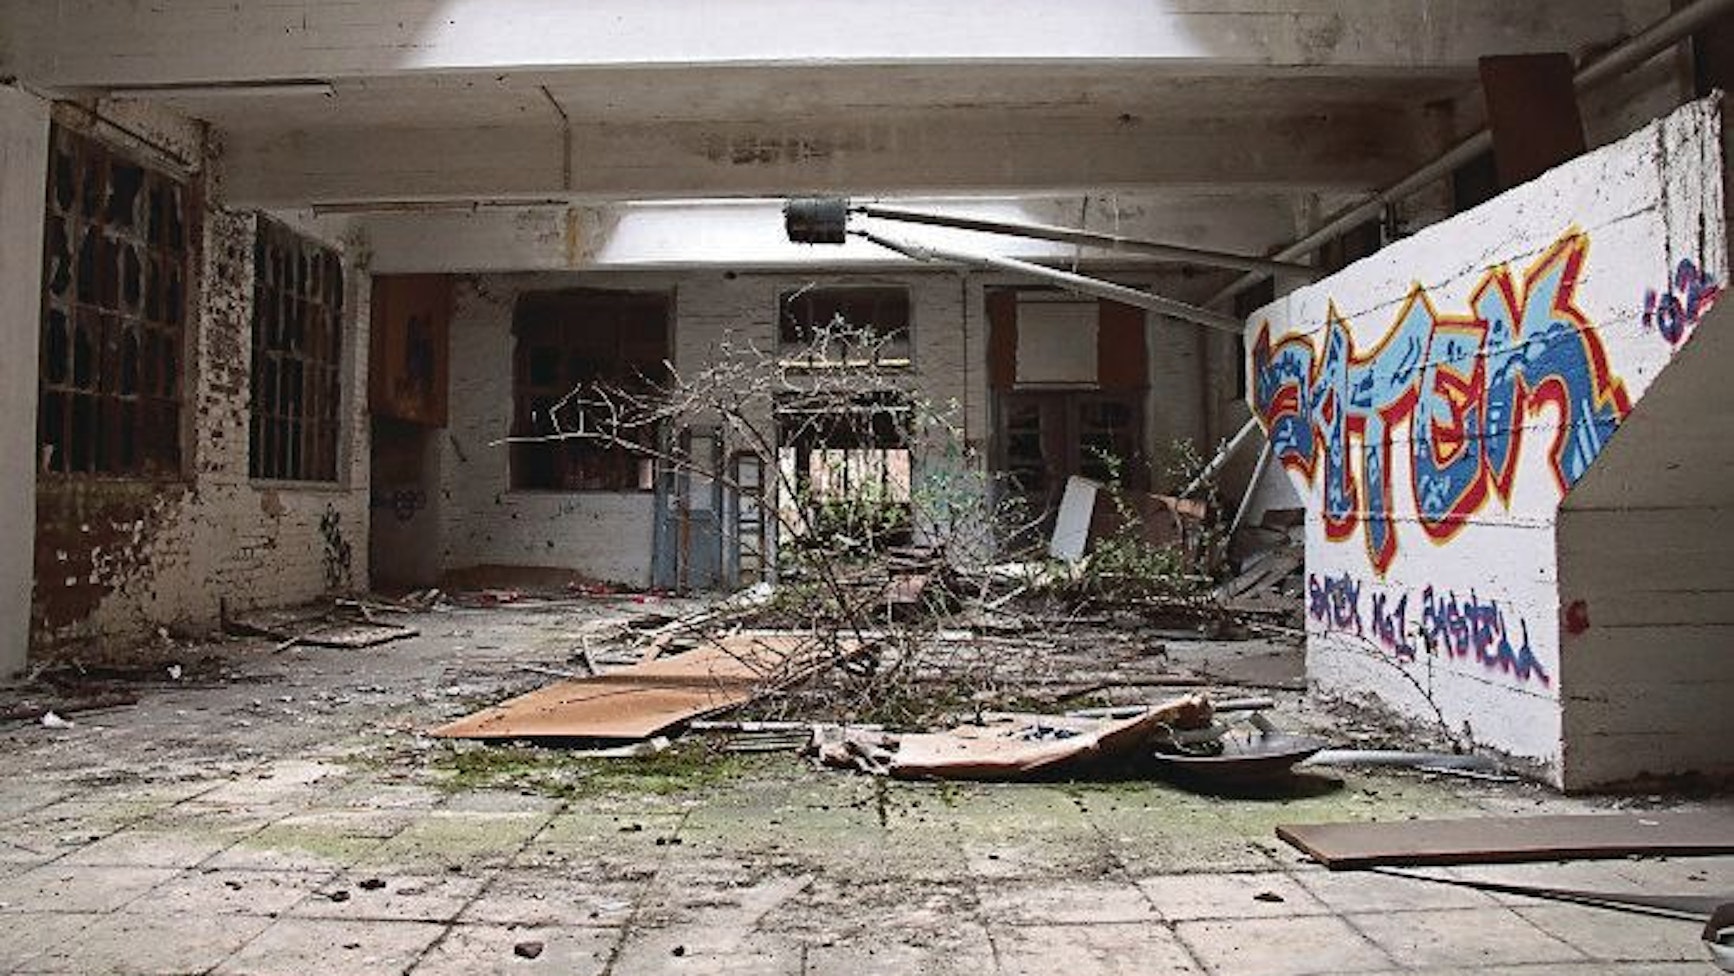 Auf dem Foto ist eine Falle der ehemaligen Norton-Fabrik zu sehen. Aus dem Boden wächst ein Baum, Wände sind mit Graffiti besprüht.